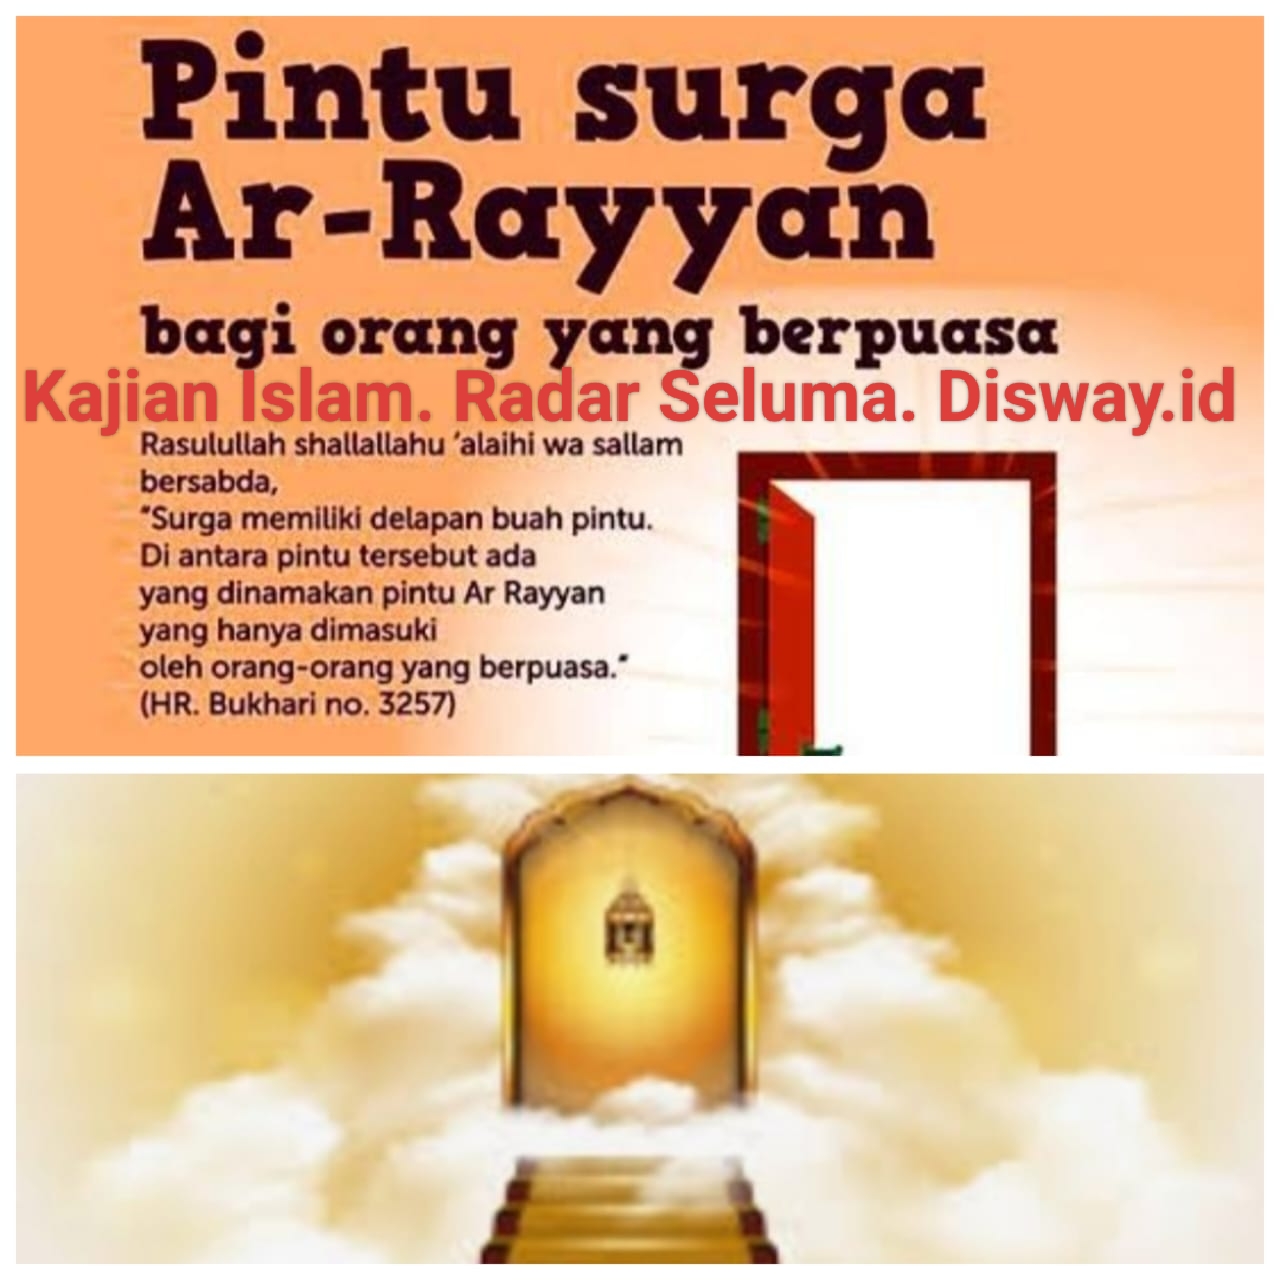 Pintu Surga Ar Rayyan Terbuka Luas Khusus Untuk Orang-orang Yang Berpuasa. Berikut Gambarannya.